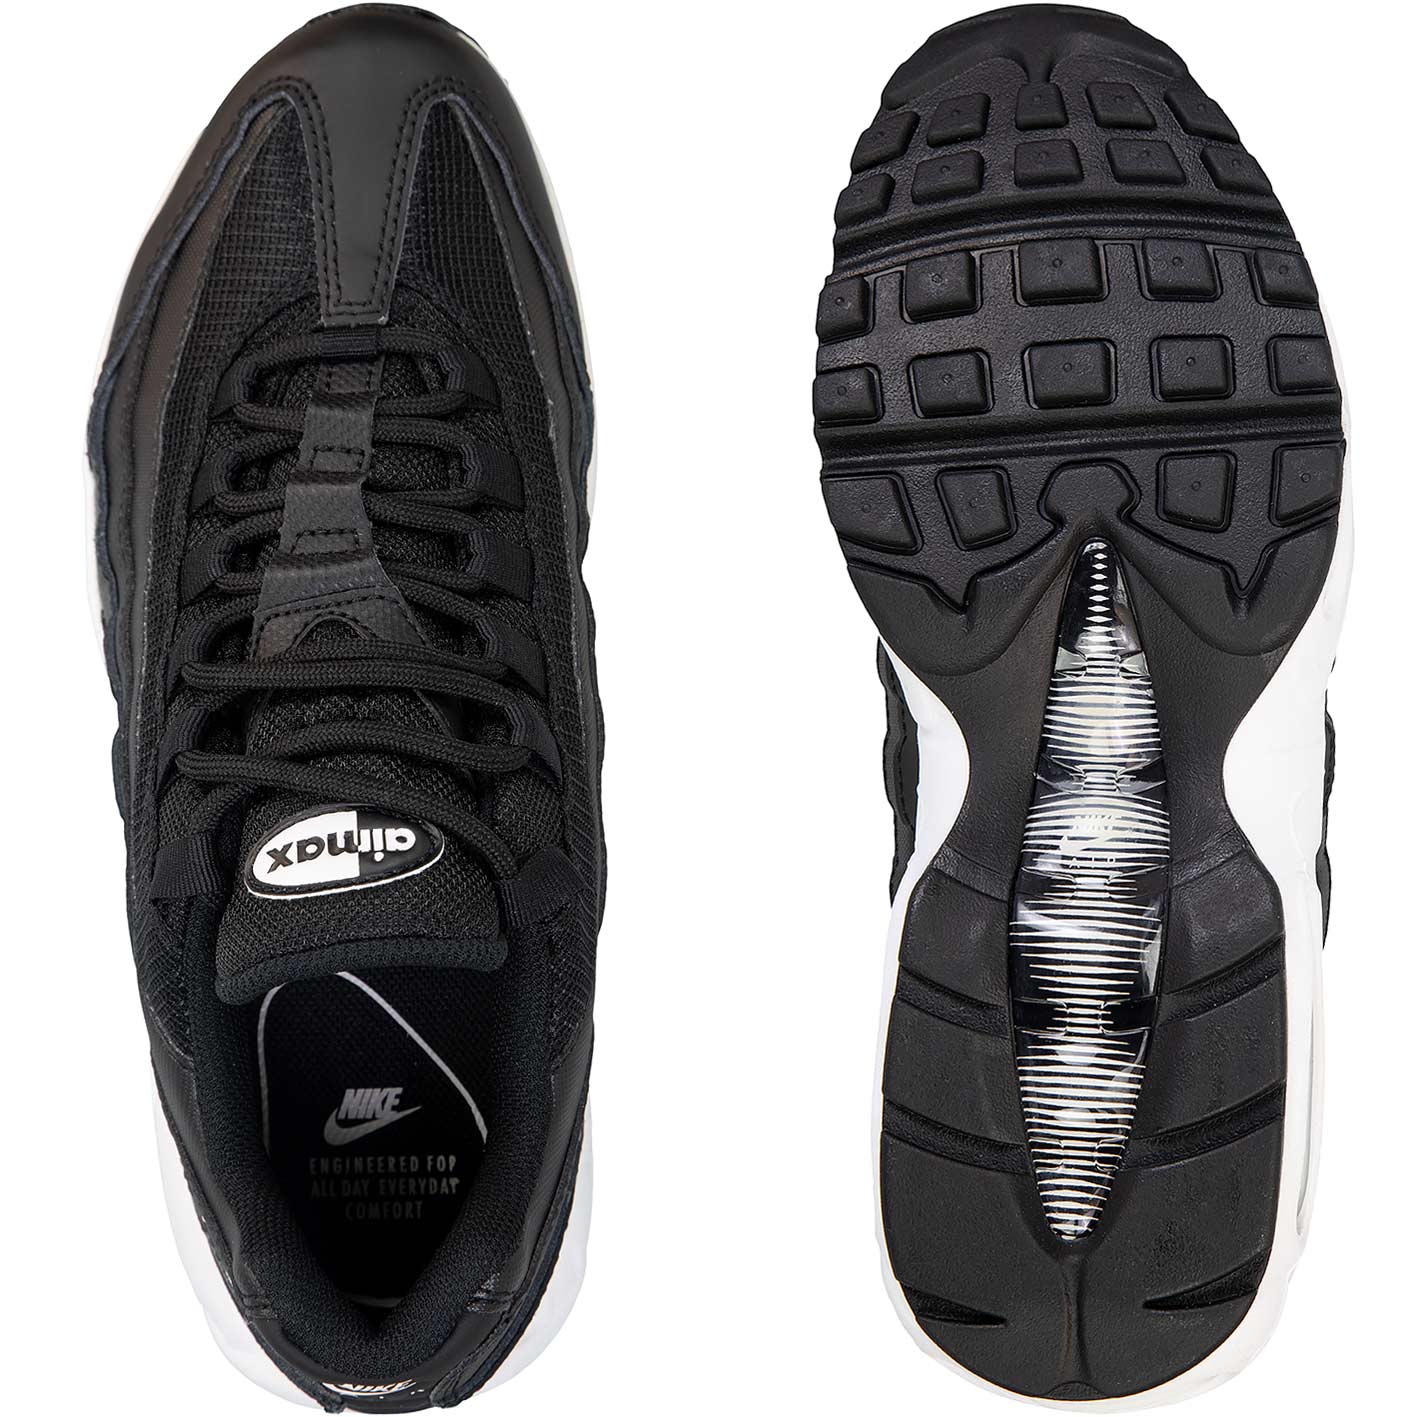 ☆ Nike Air Max 95 Essential Damen Sneaker schwarz/weiß - hier bestellen!